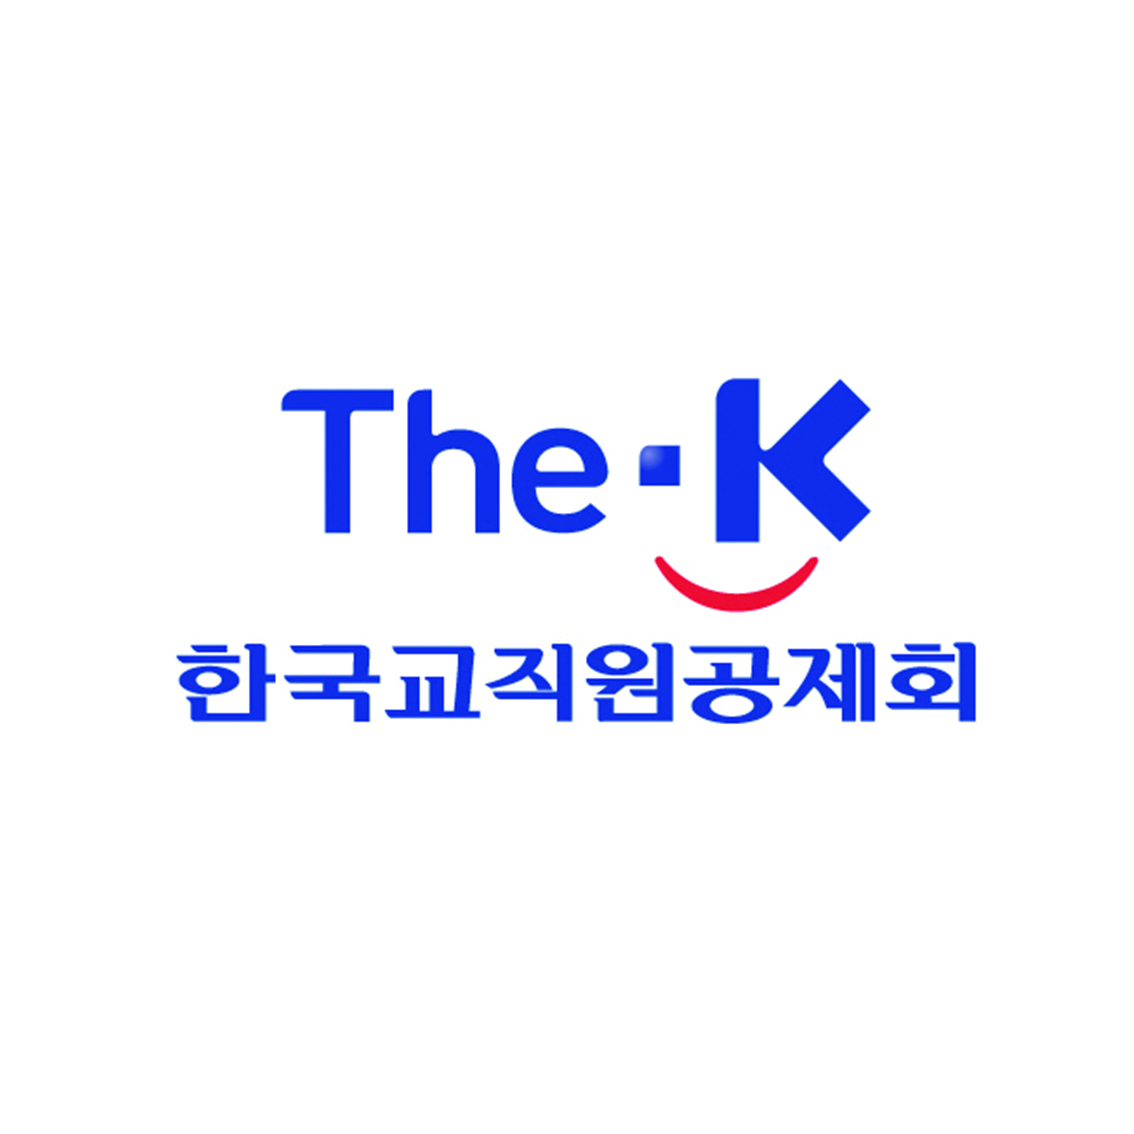 코엑스 아쿠아리움 우대 혜택: 한국 교직원 공제회